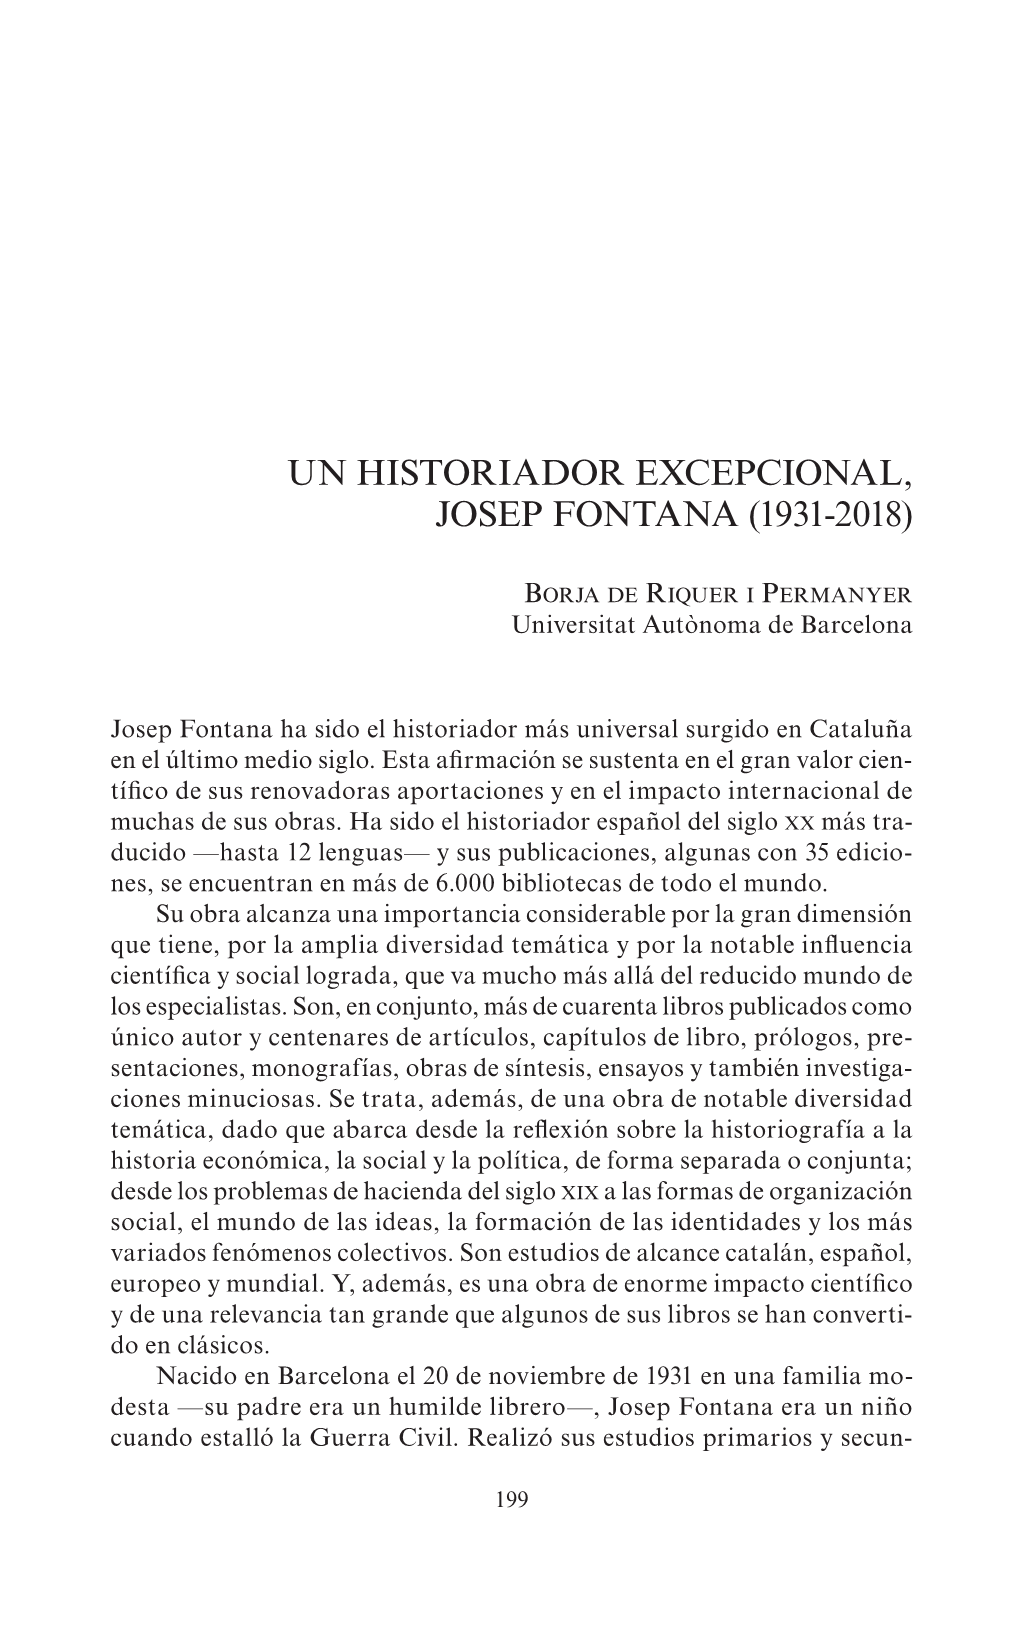 Un Historiador Excepcional, Josep Fontana (1931-2018)